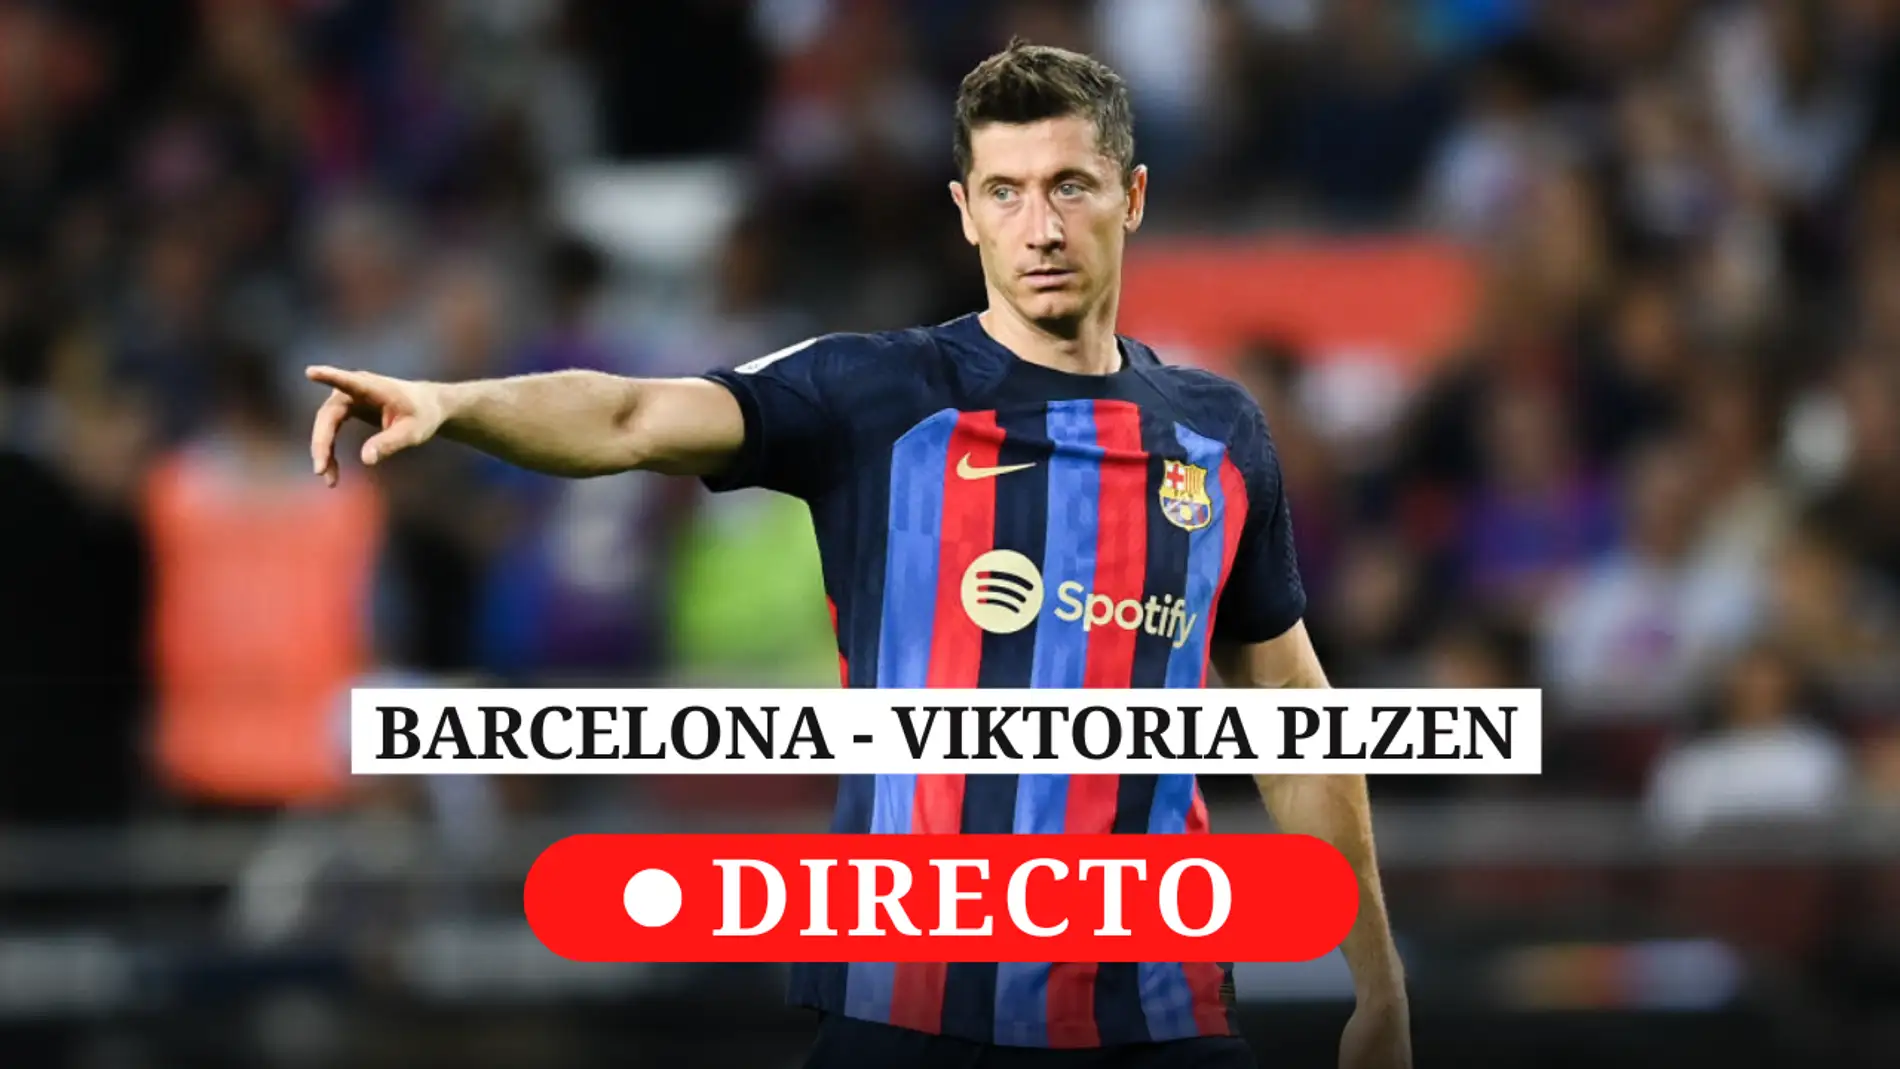 Barcelona - Viktoria Plzen: resultado de hoy, y comentarios partido de Champions League | Onda Cero